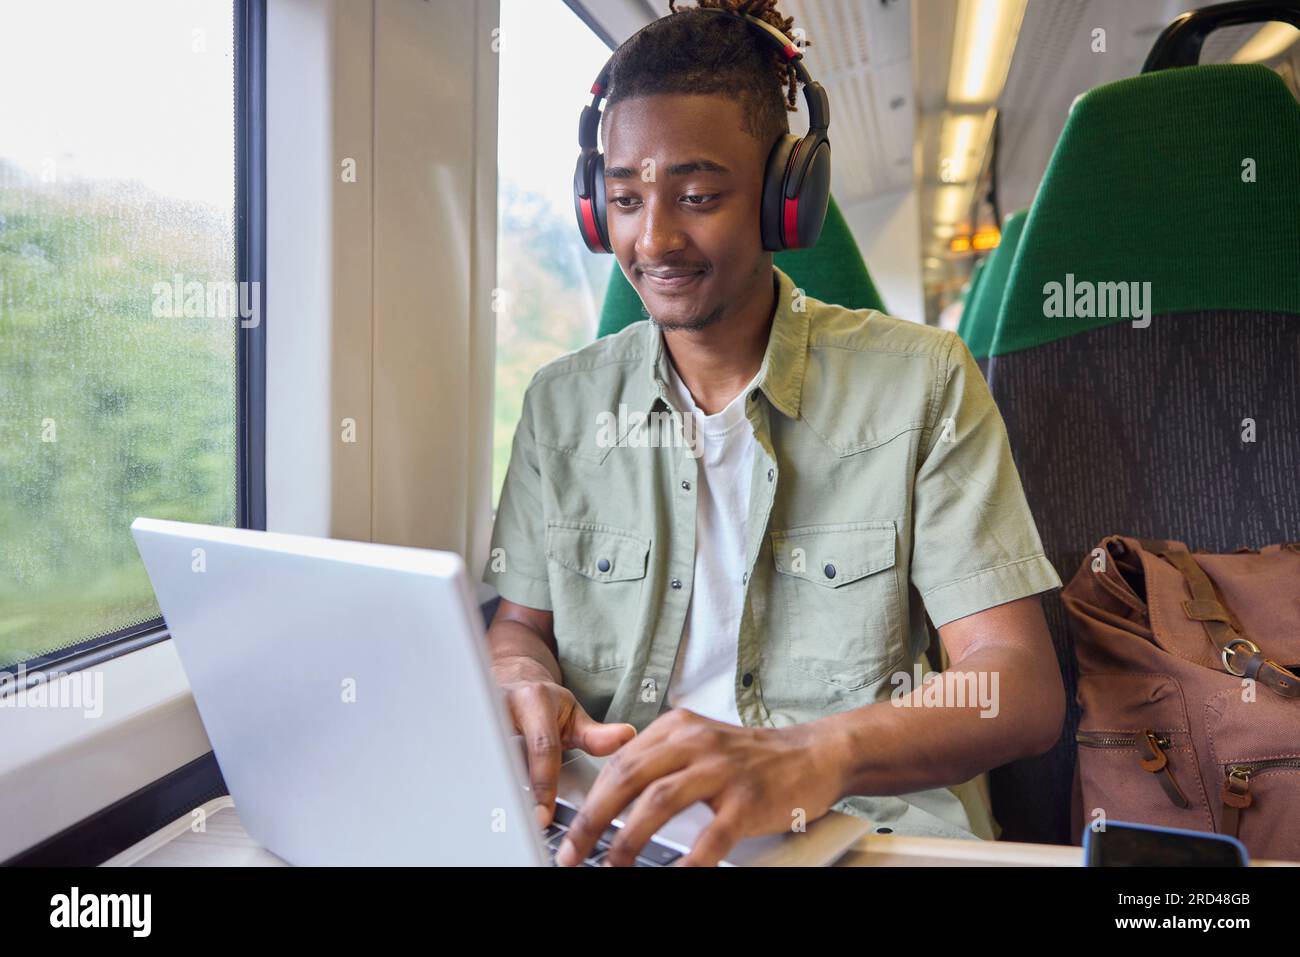 Jeune homme se rendant au travail assis sur le train travaillant sur un ordinateur portable Banque D'Images